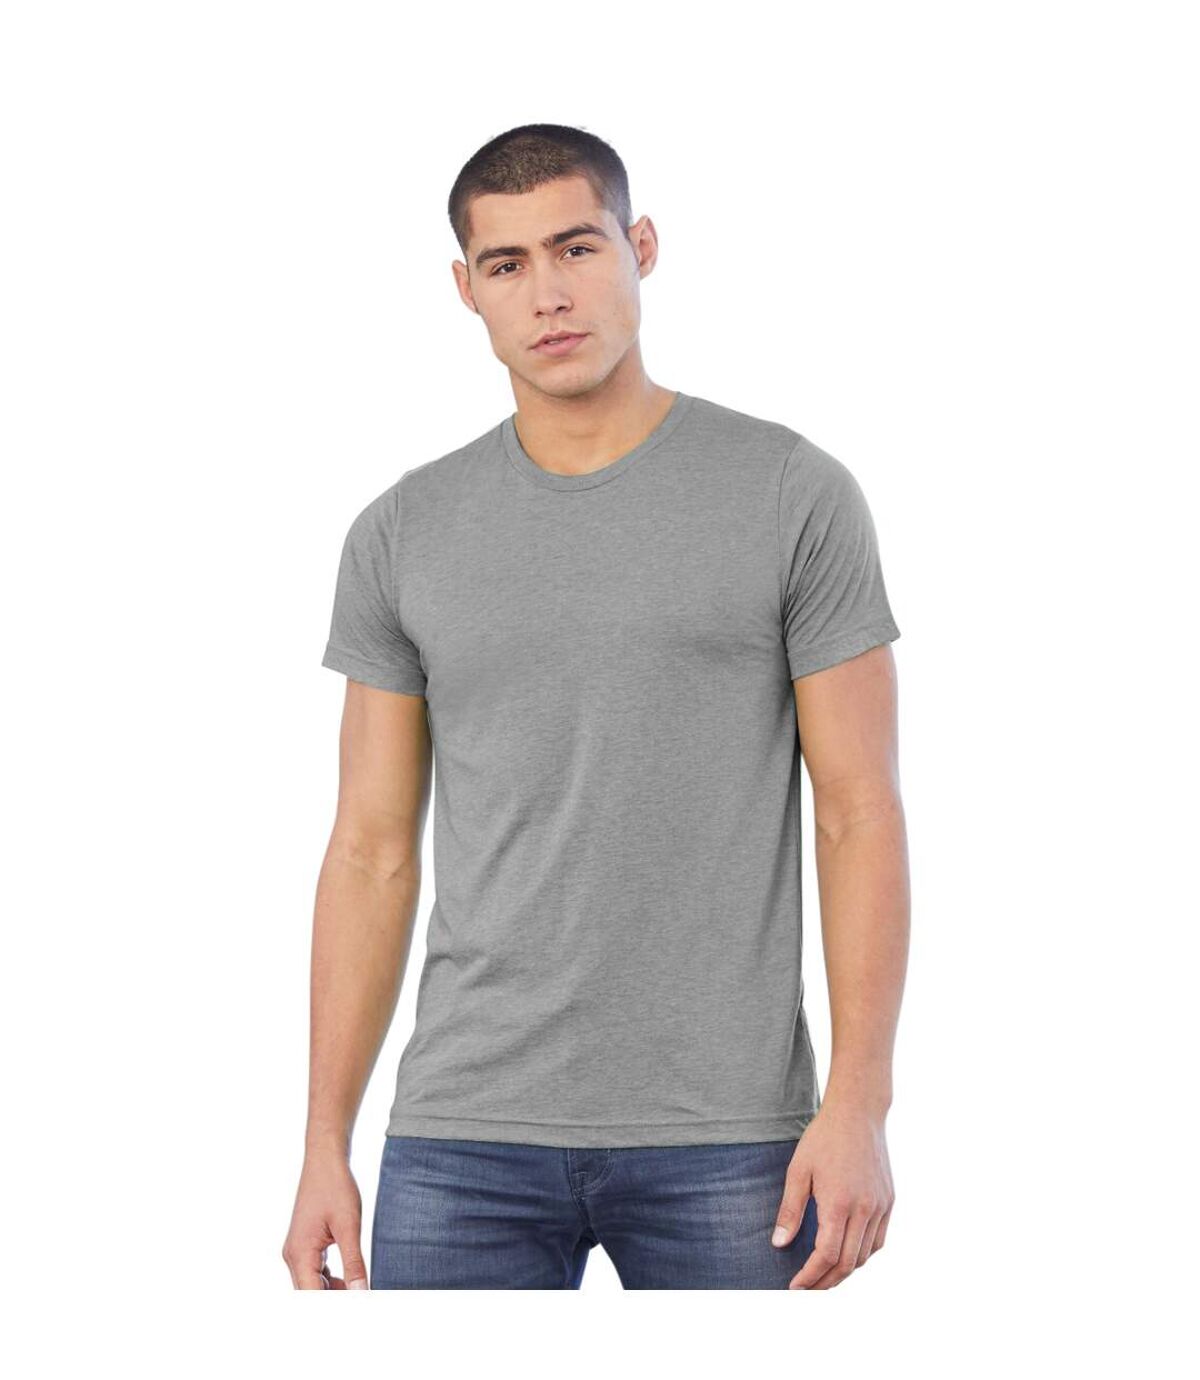 Canvas Triblend - T-shirt à manches courtes - Homme (Triblend d'argile) - UTBC168